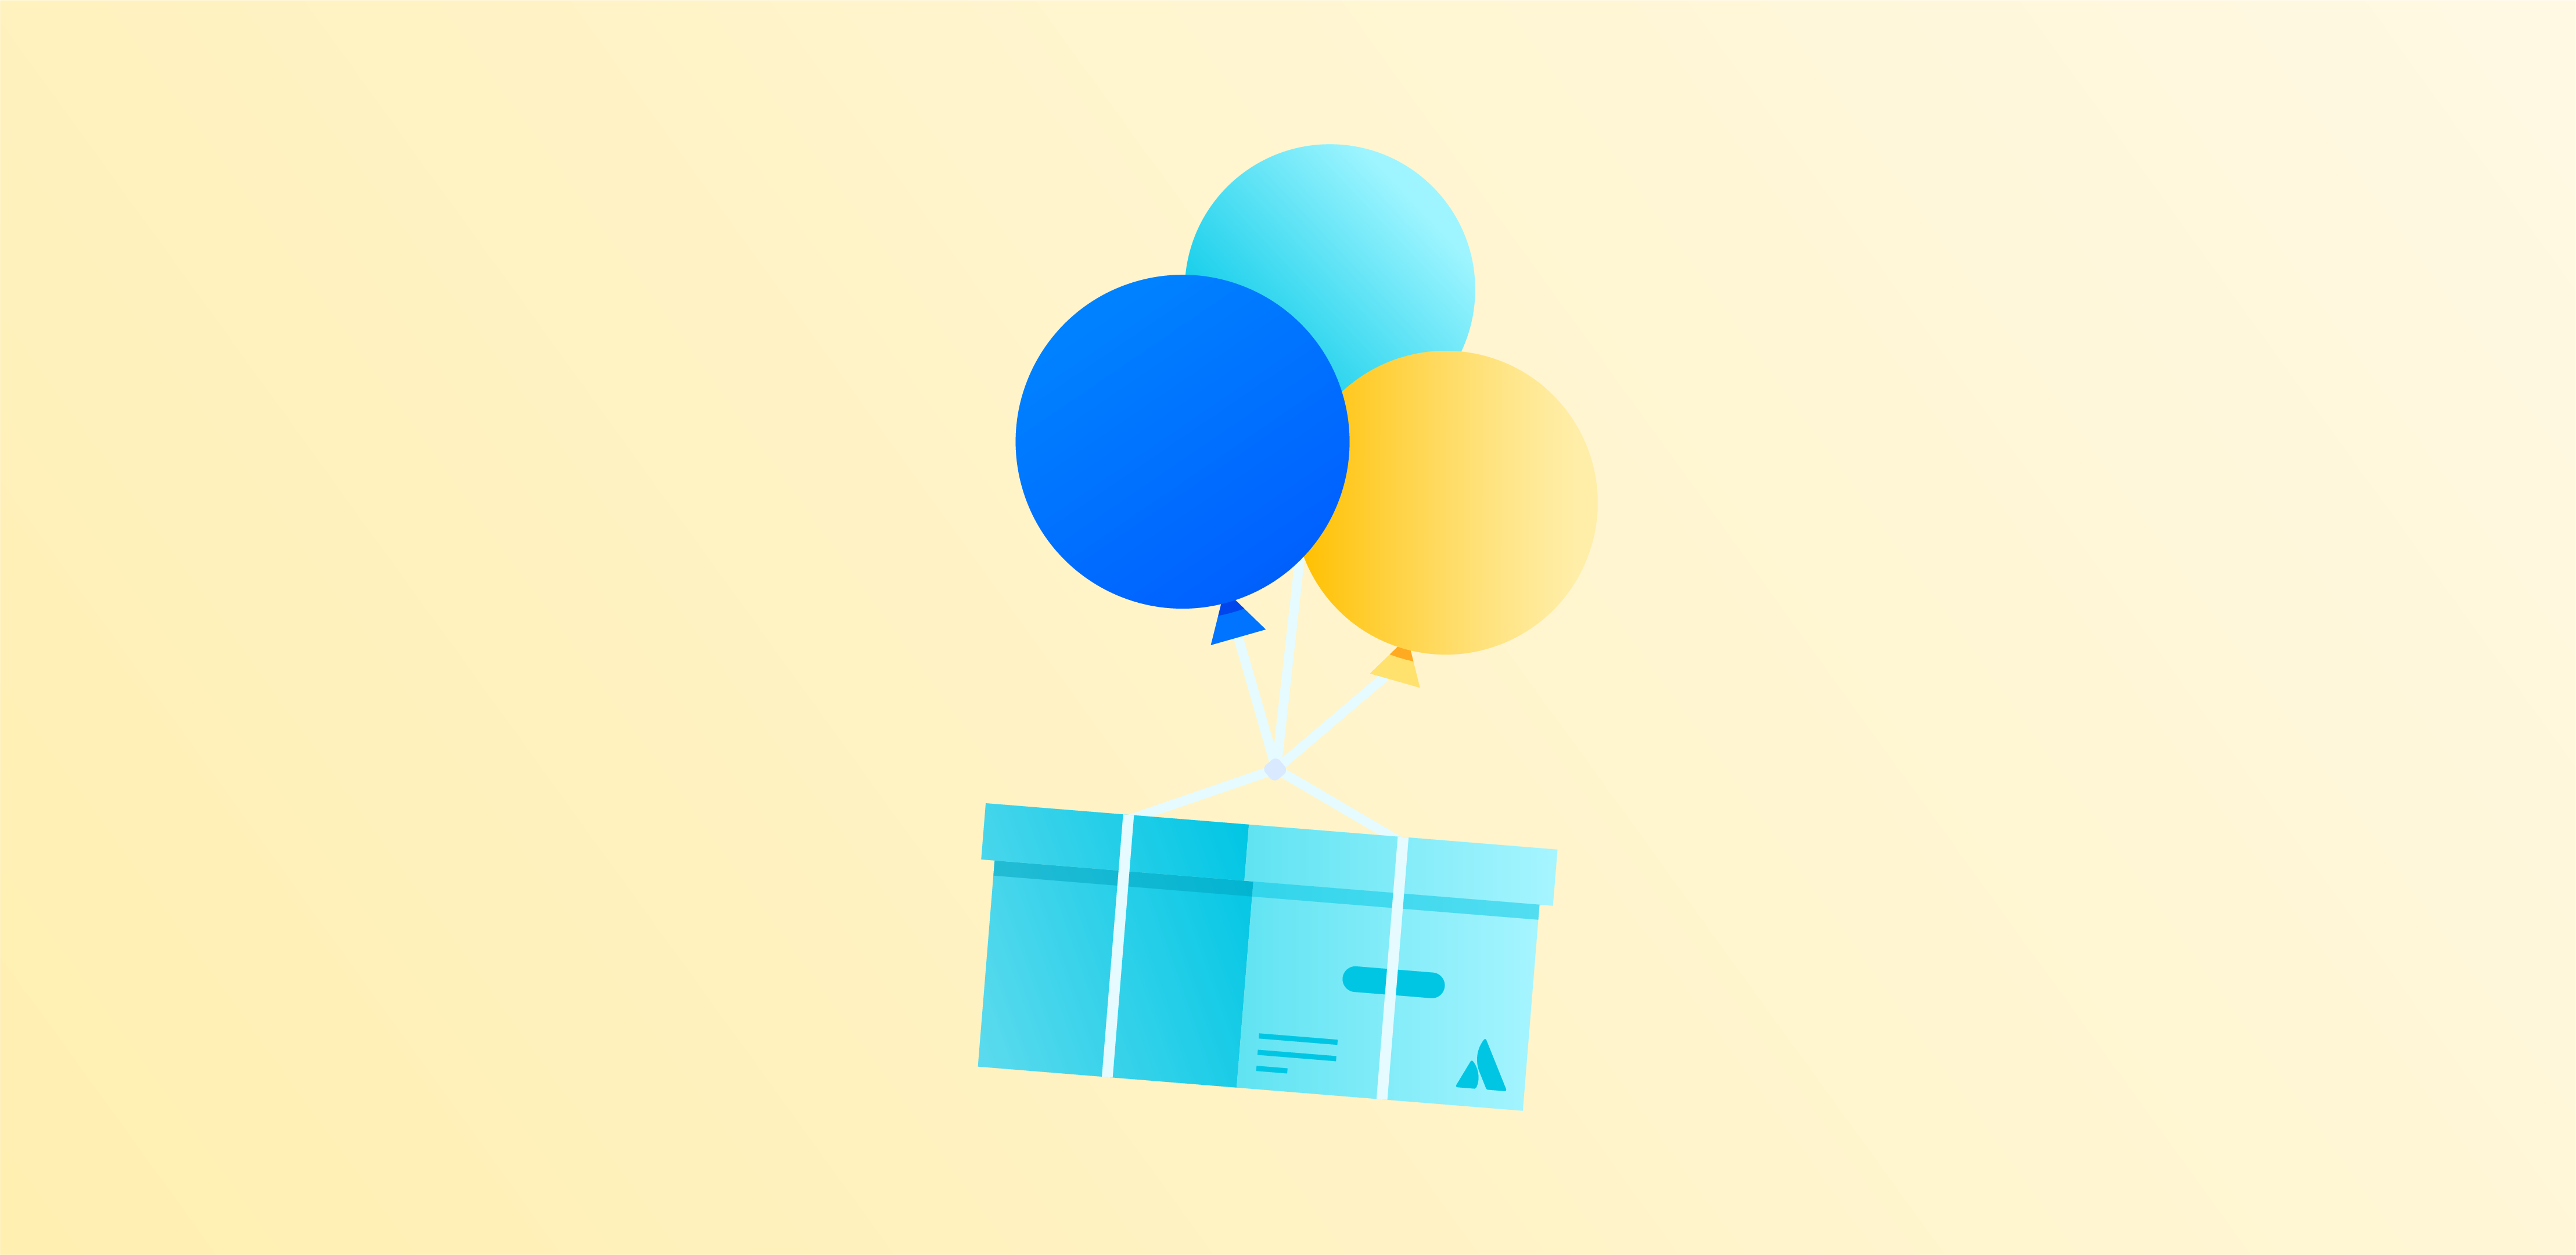 Ballons, an denen eine Kiste hängt